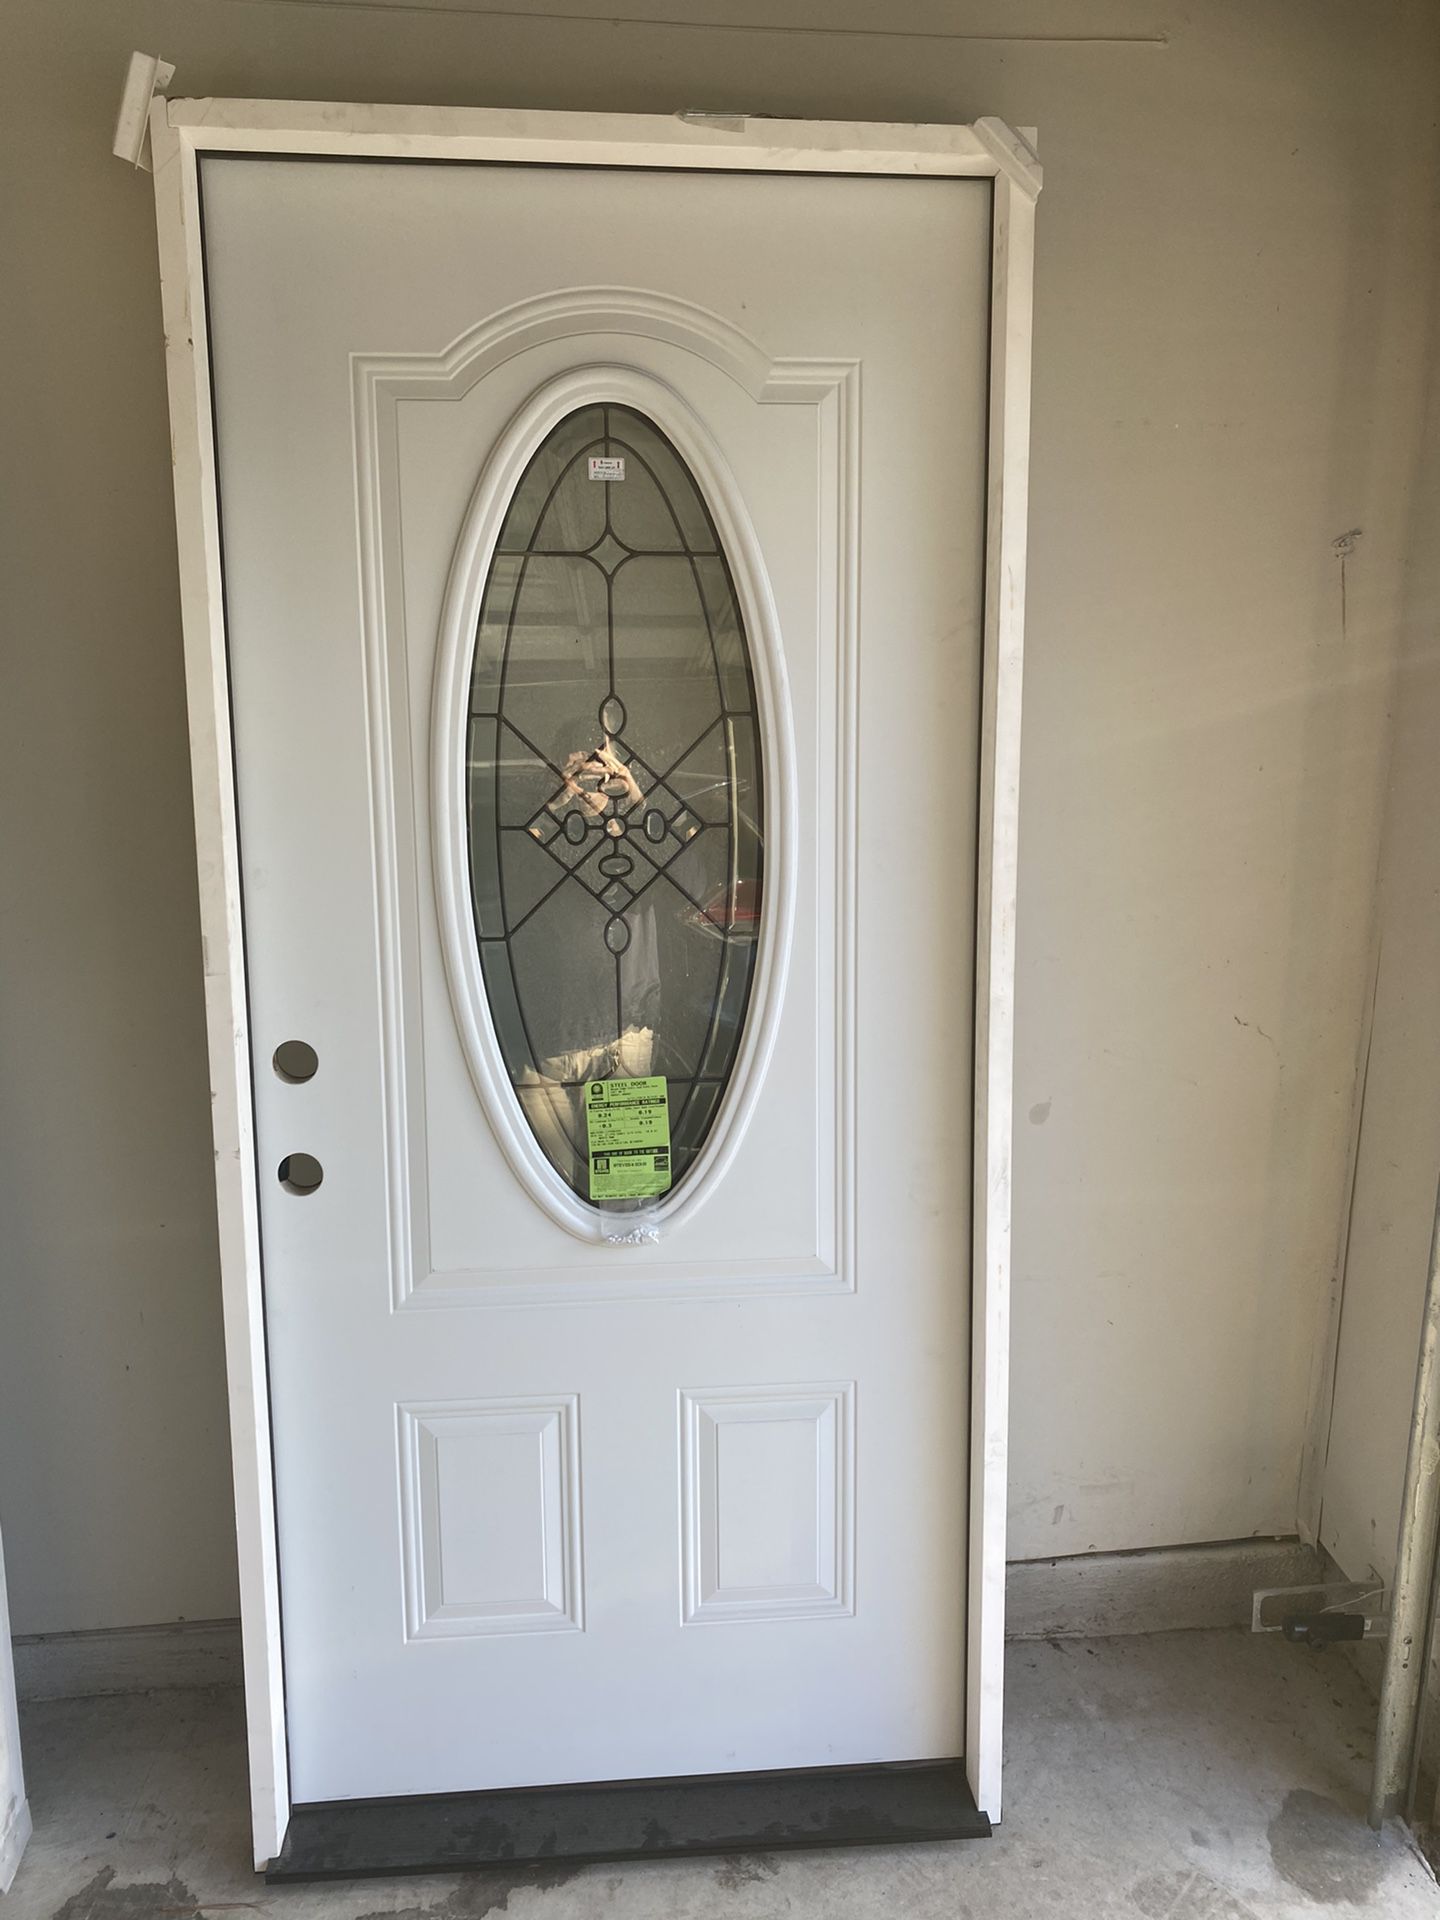 Brand new front door